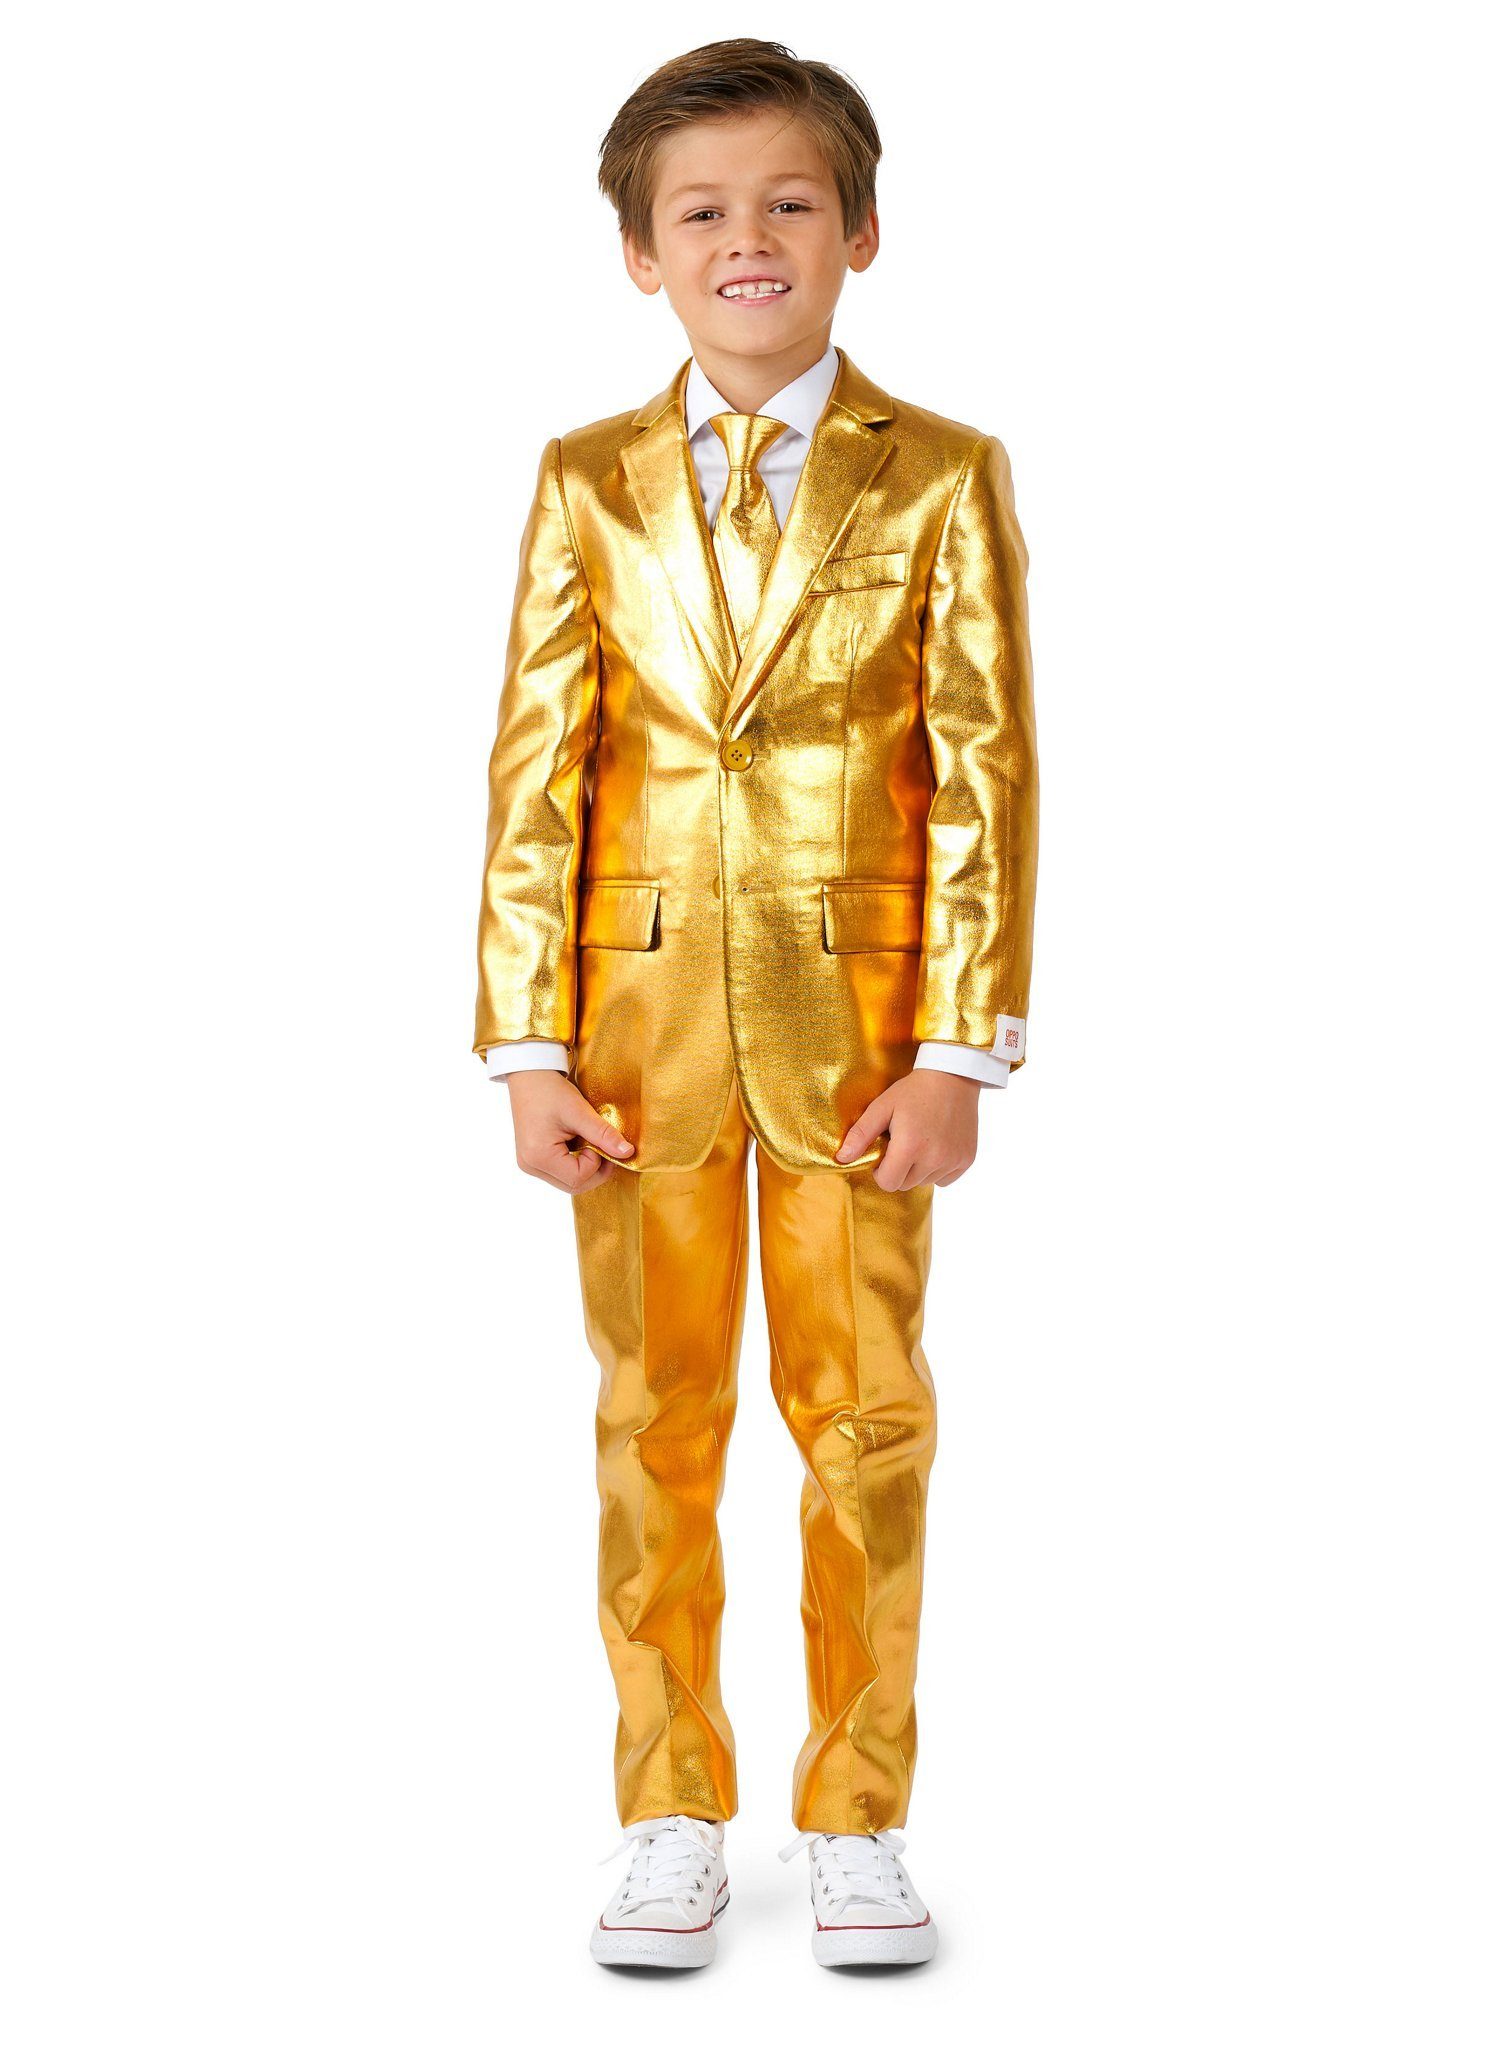 Opposuits Kinderanzug Boys Groovy Gold Anzug für Kinder Going for Gold: Bling-Bling zum Anziehen